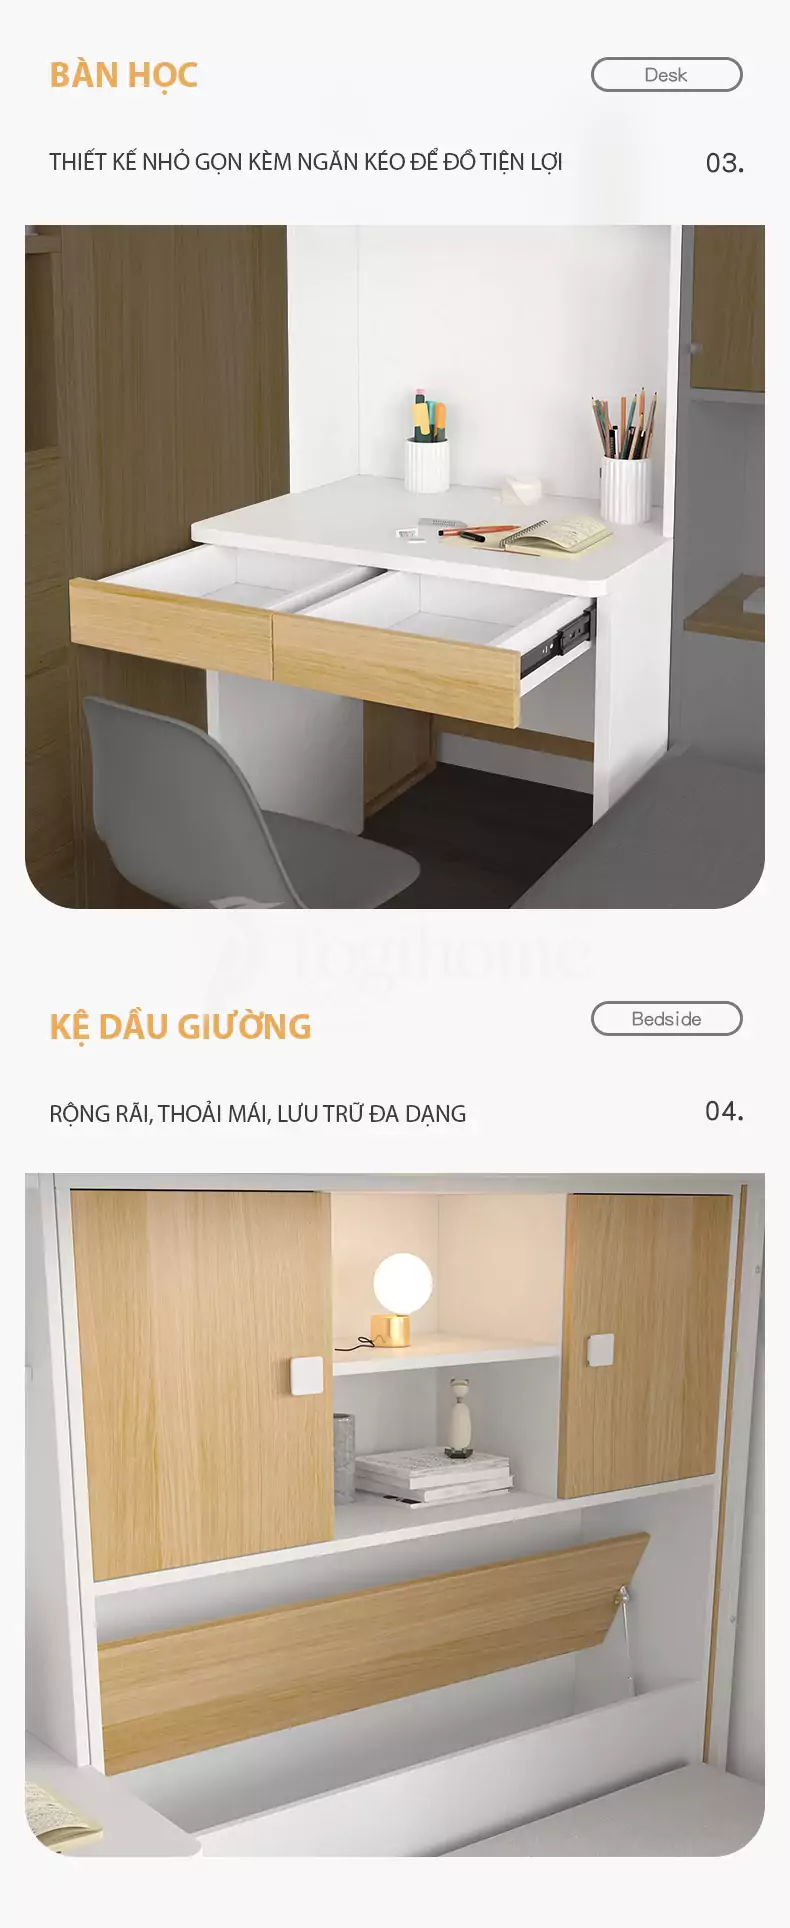 Combo giường ngủ kết hợp tủ lưu trữ và bàn làm việc thiết kế hiện đại, nhiều kiểu dáng lựa chọn với bàn học thiết kế thông minh